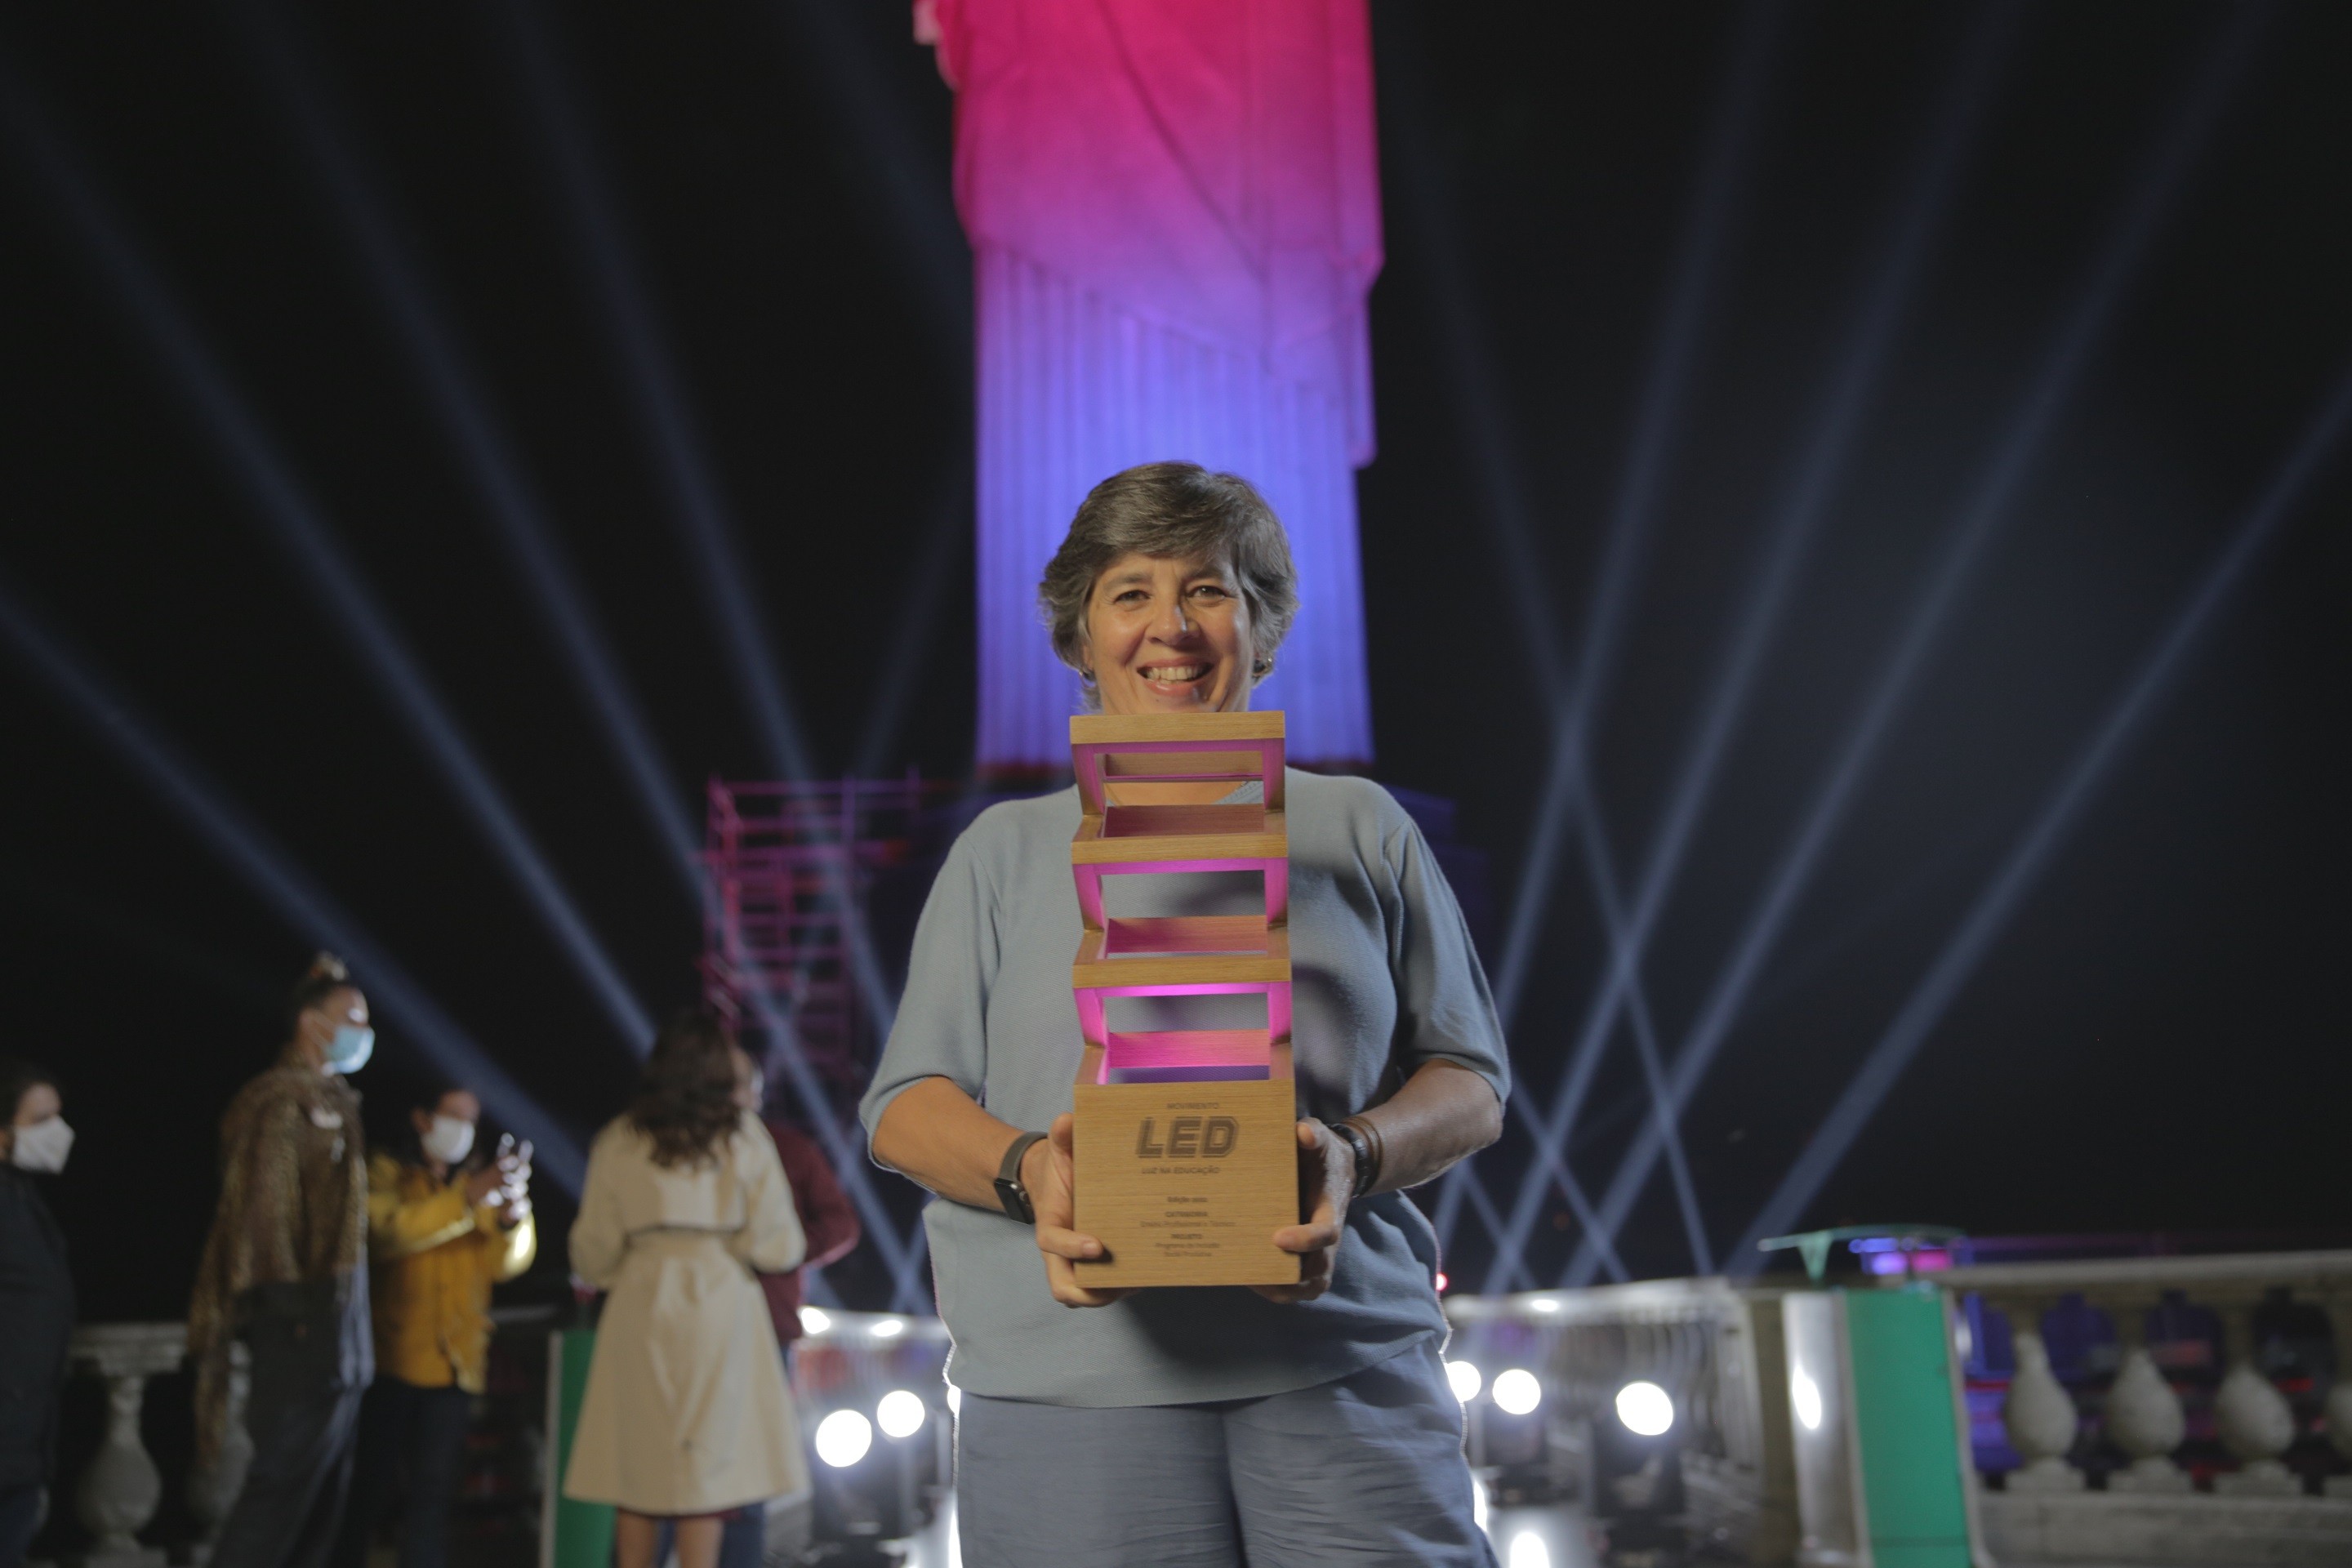 Clarice Linhares, do ‘Programa de Inclusão Social Produtiva’, recebe prêmio no ‘Especial LED Luz na Educação’ (Foto: Laís Dantas)